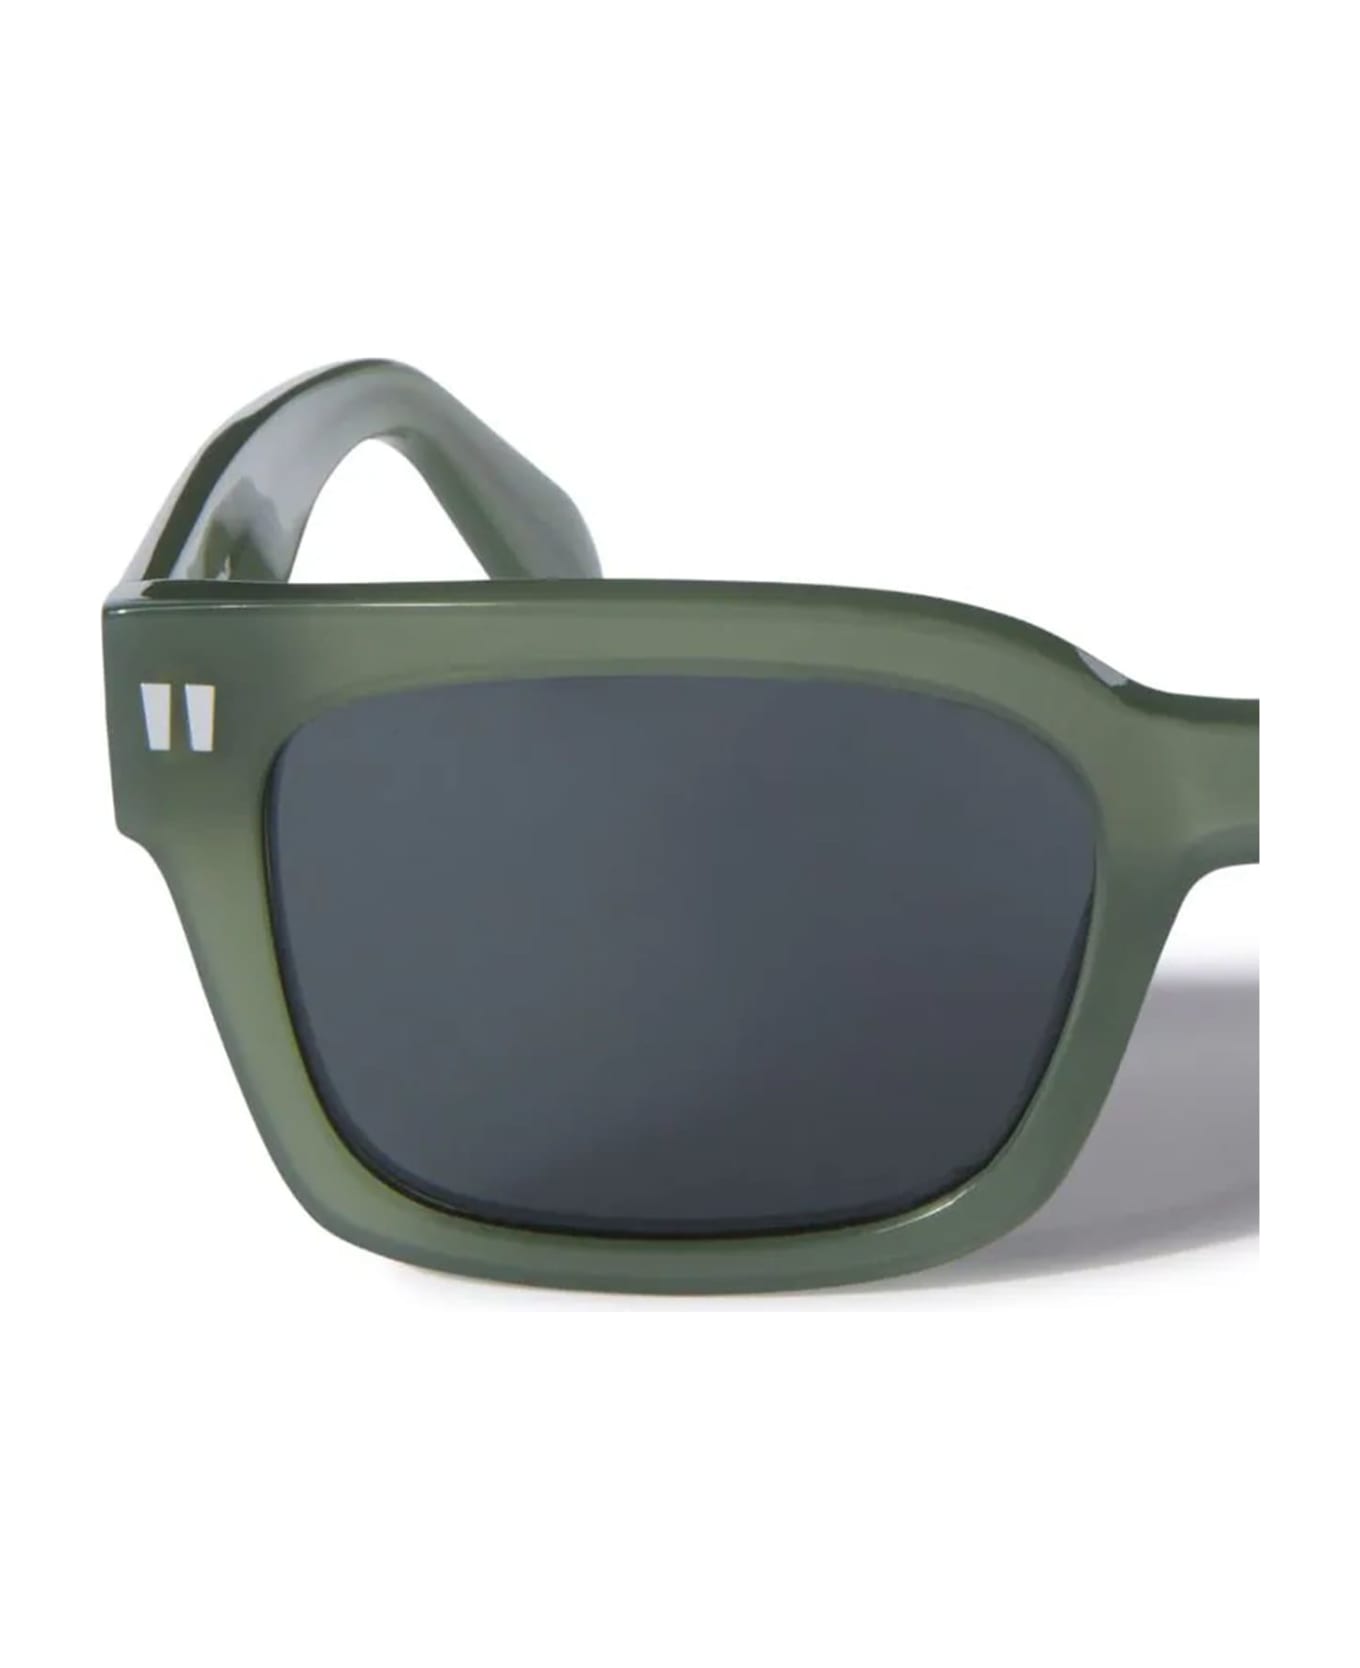 Off-White Midland Sunglasses - olive green